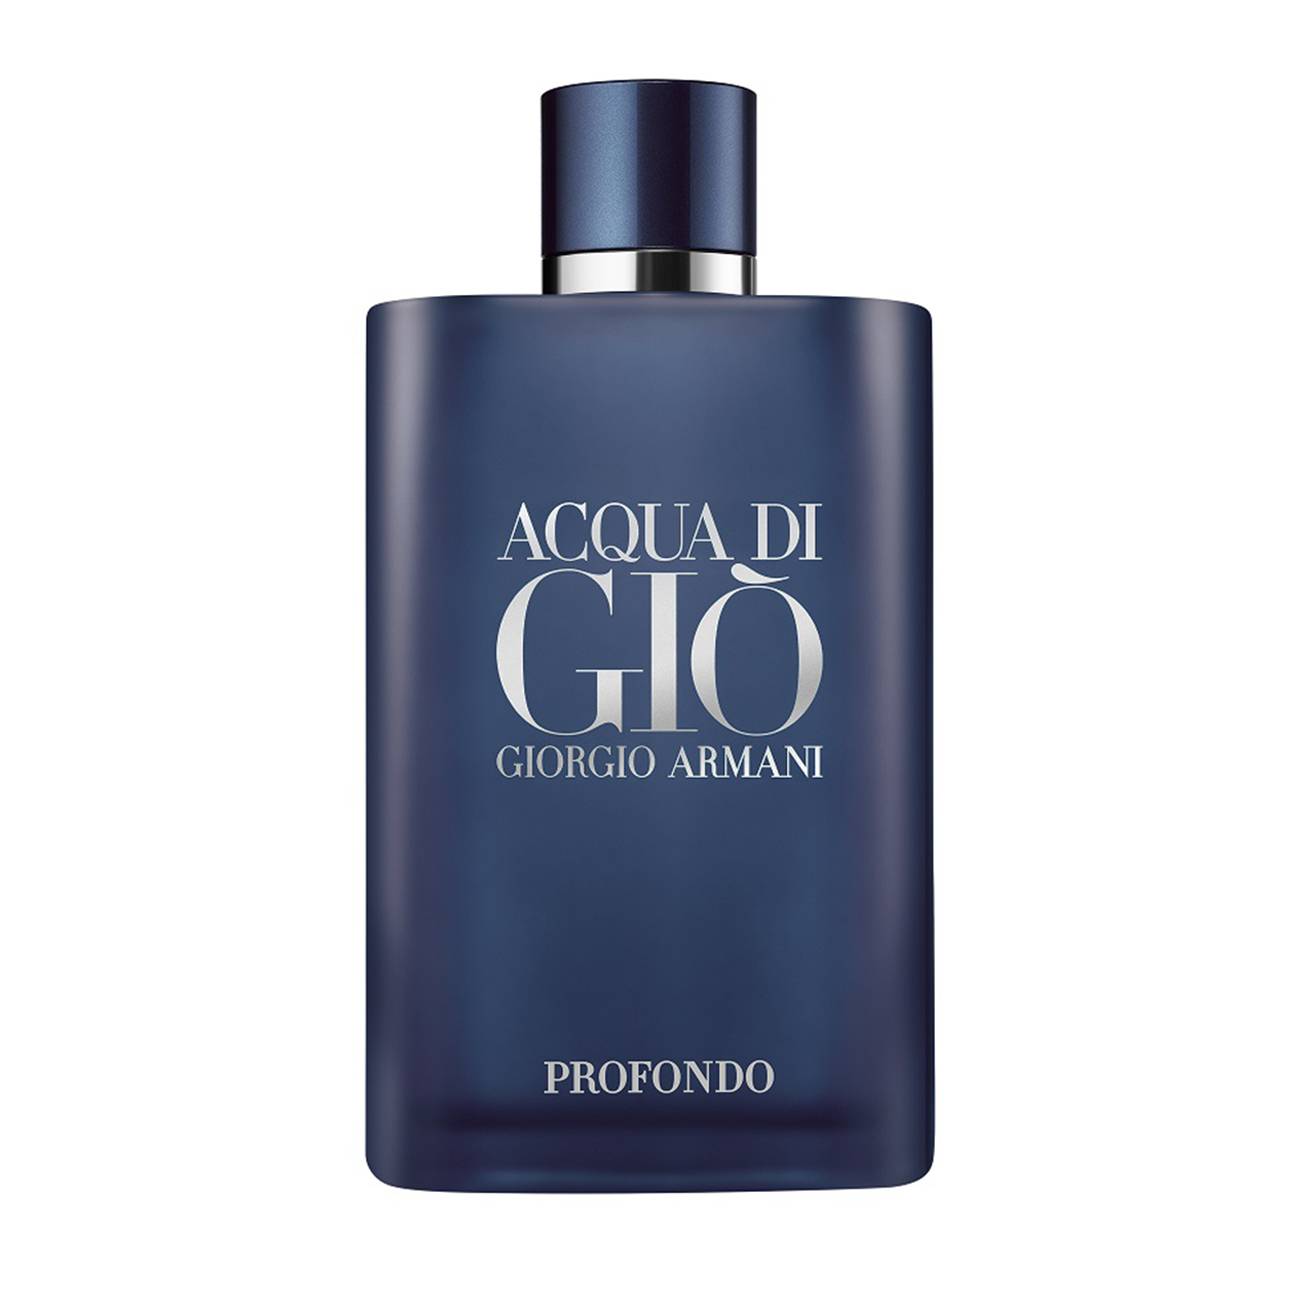 Acqua Di Gio Profondo 200 ml original Giorgio Armani 200